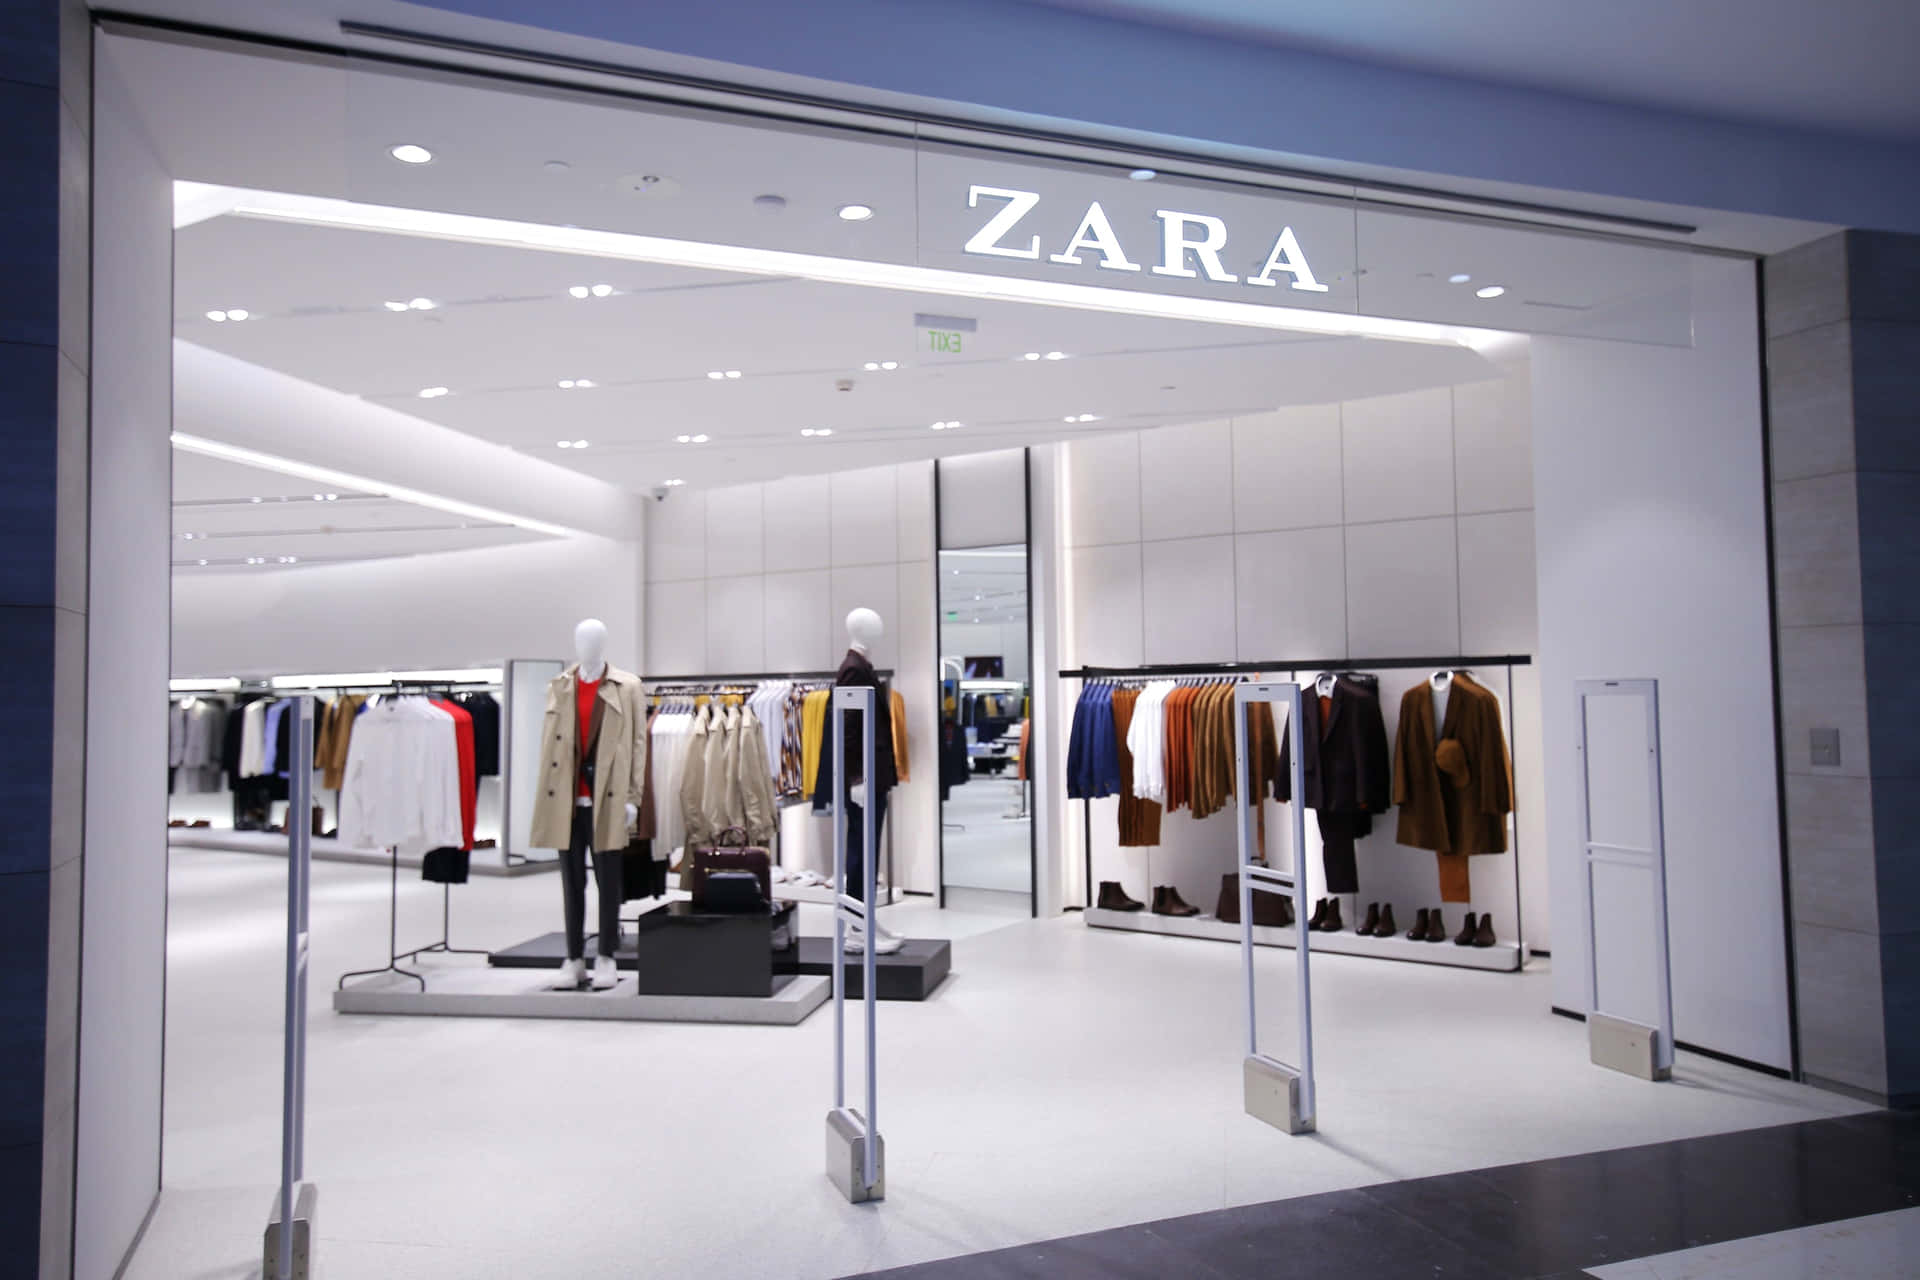 Zara brand